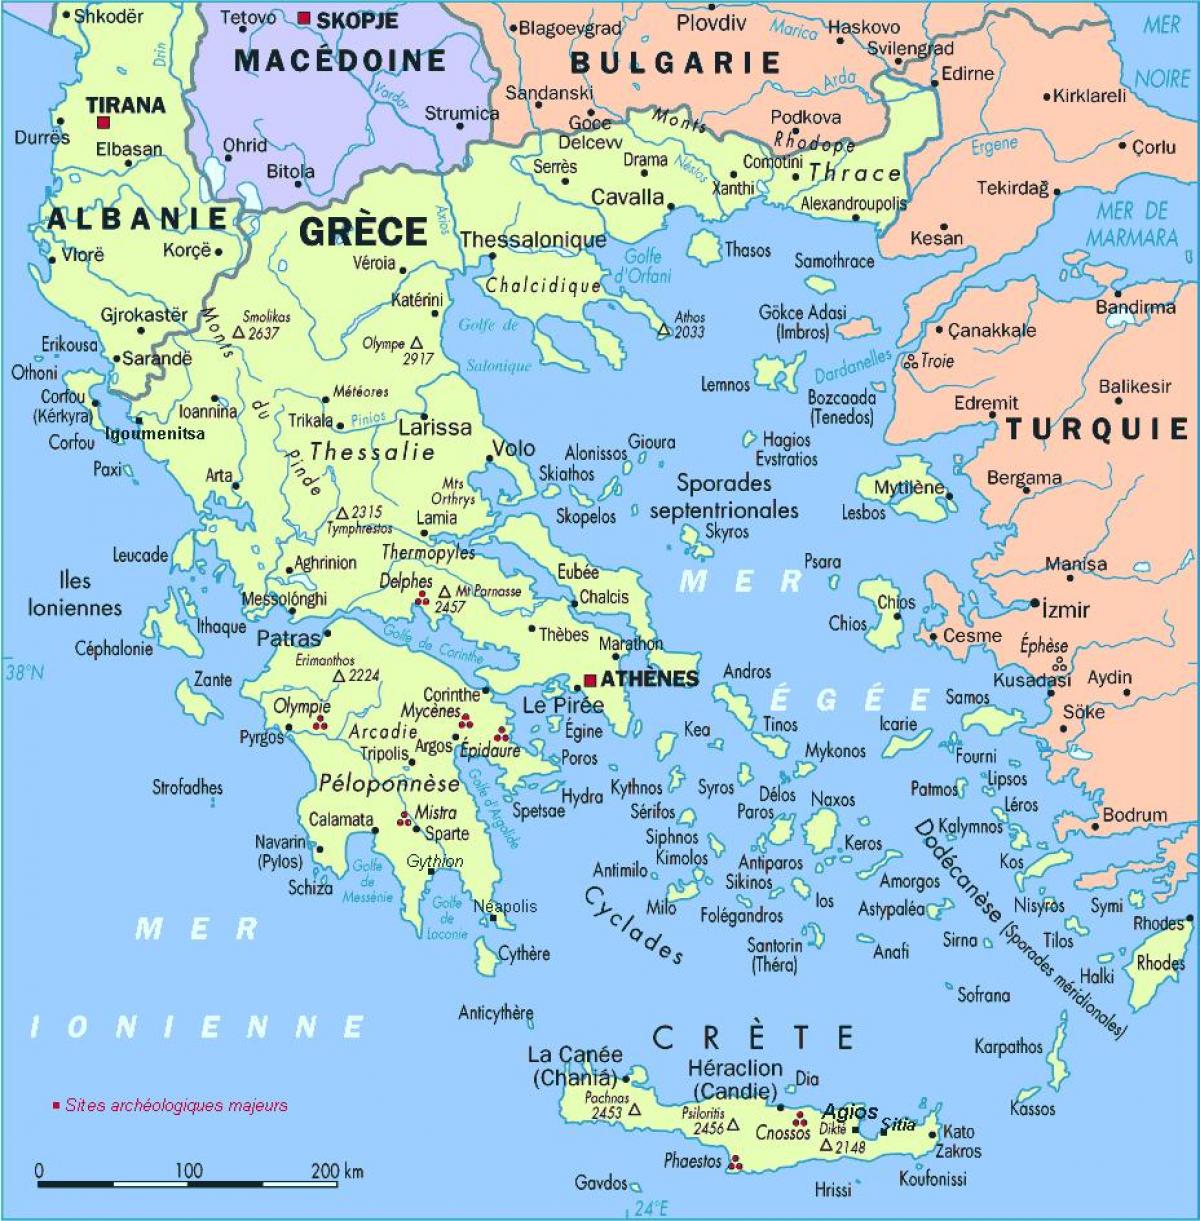 Yunanistan'ın detaylı göster